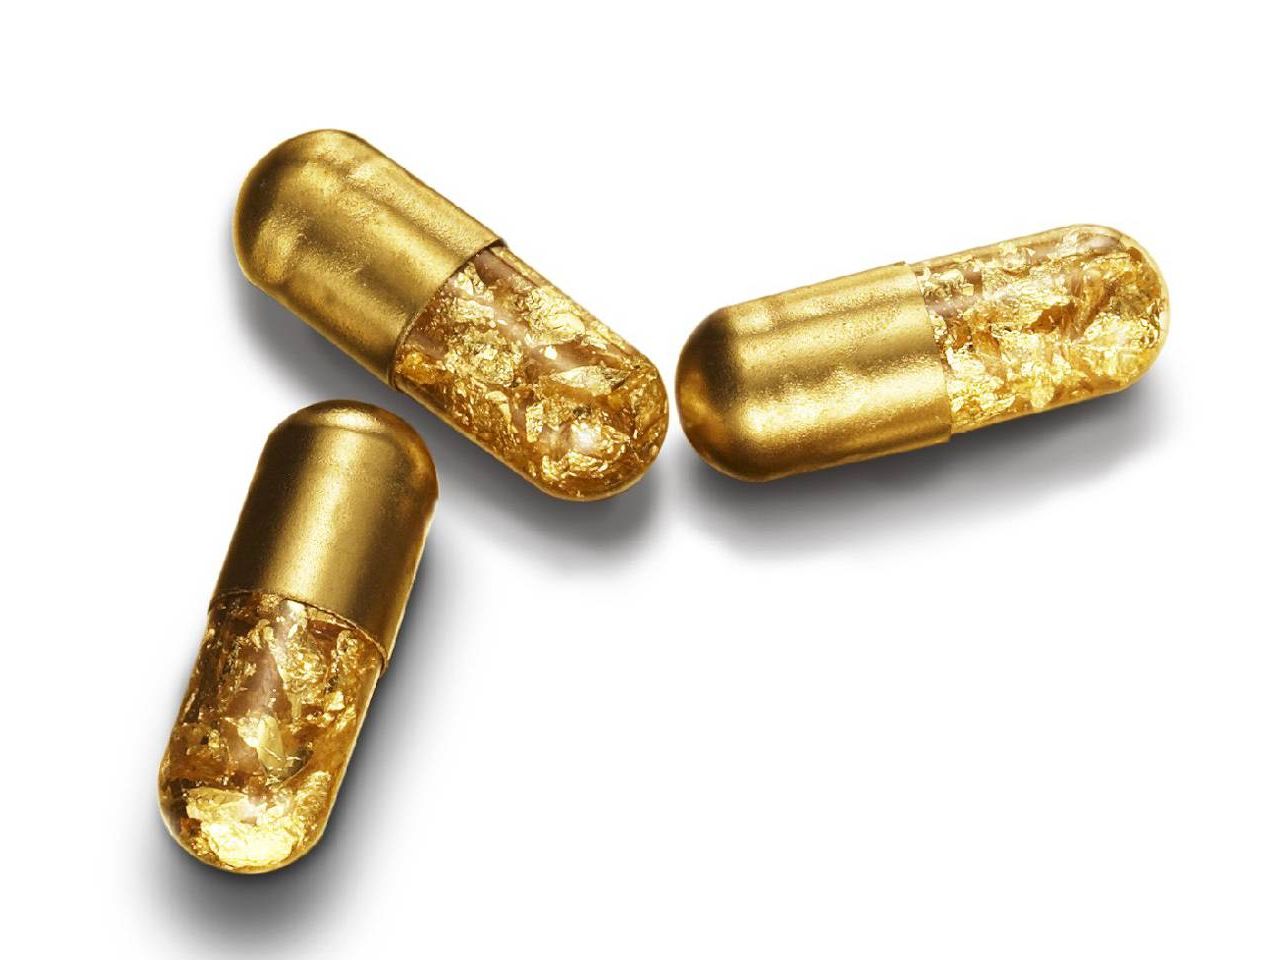 Gold Poop Pills